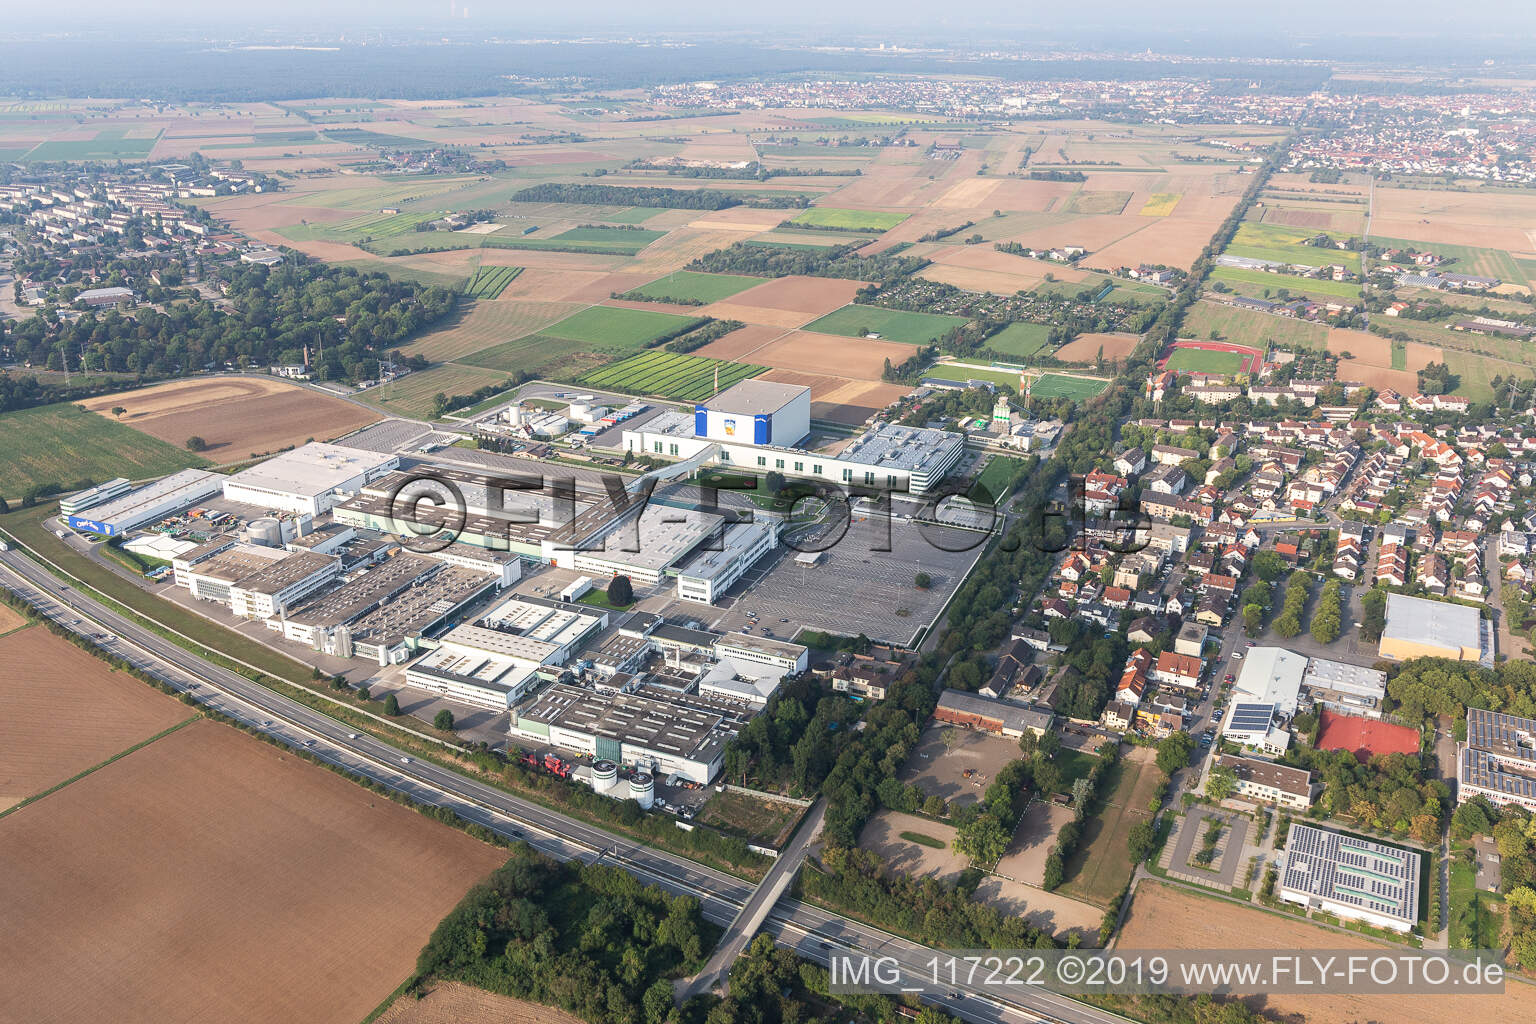 Luftbild von ADM WILD Europe in Eppelheim im Bundesland Baden-Württemberg, Deutschland